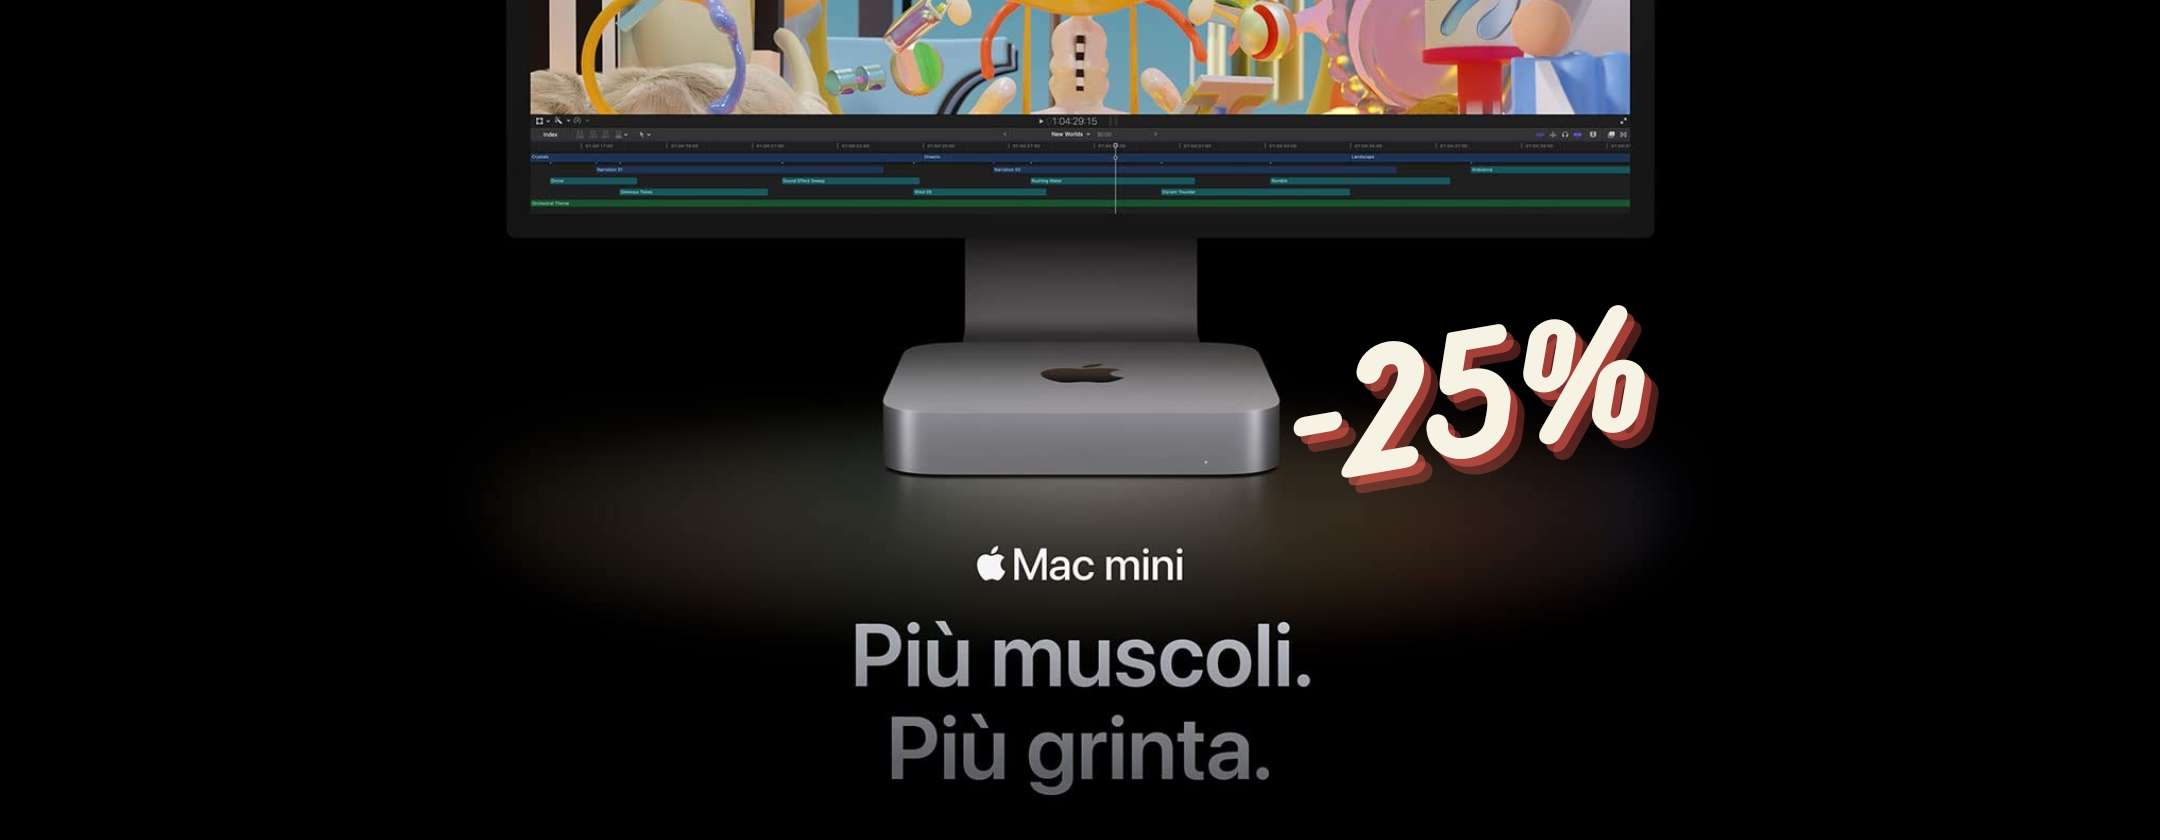 Mac mini M2 al MINIMO STORICO su Amazon: 25% di SCONTO